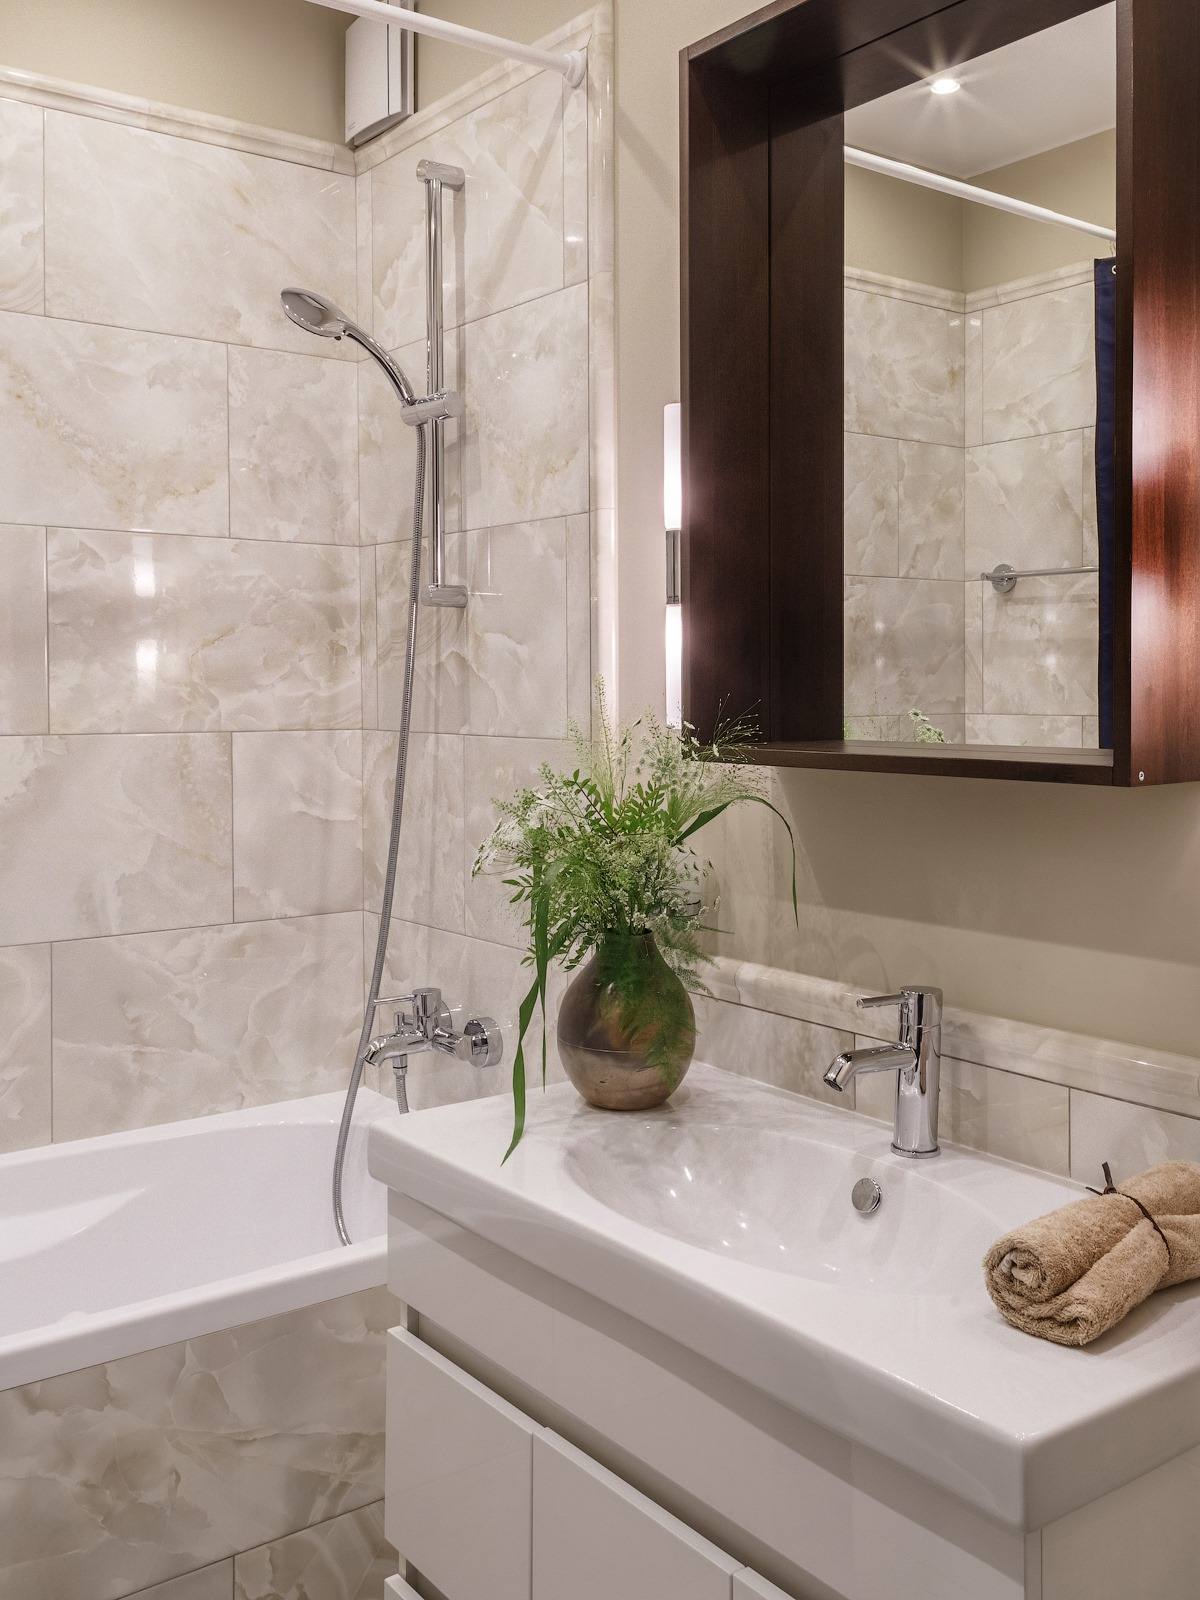 Tường và bồn phòng tắm được ốp đá màu be đường vân nhẹ nhàng, sang trọng. Tủ lưu trữ kết hợp bồn rửa tay bằng sứ sáng bóng. Phía trên là tấm gương giúp phản chiếu không gian và ánh sáng cho căn phòng cảm giác rộng hơn so với diện tích thật.